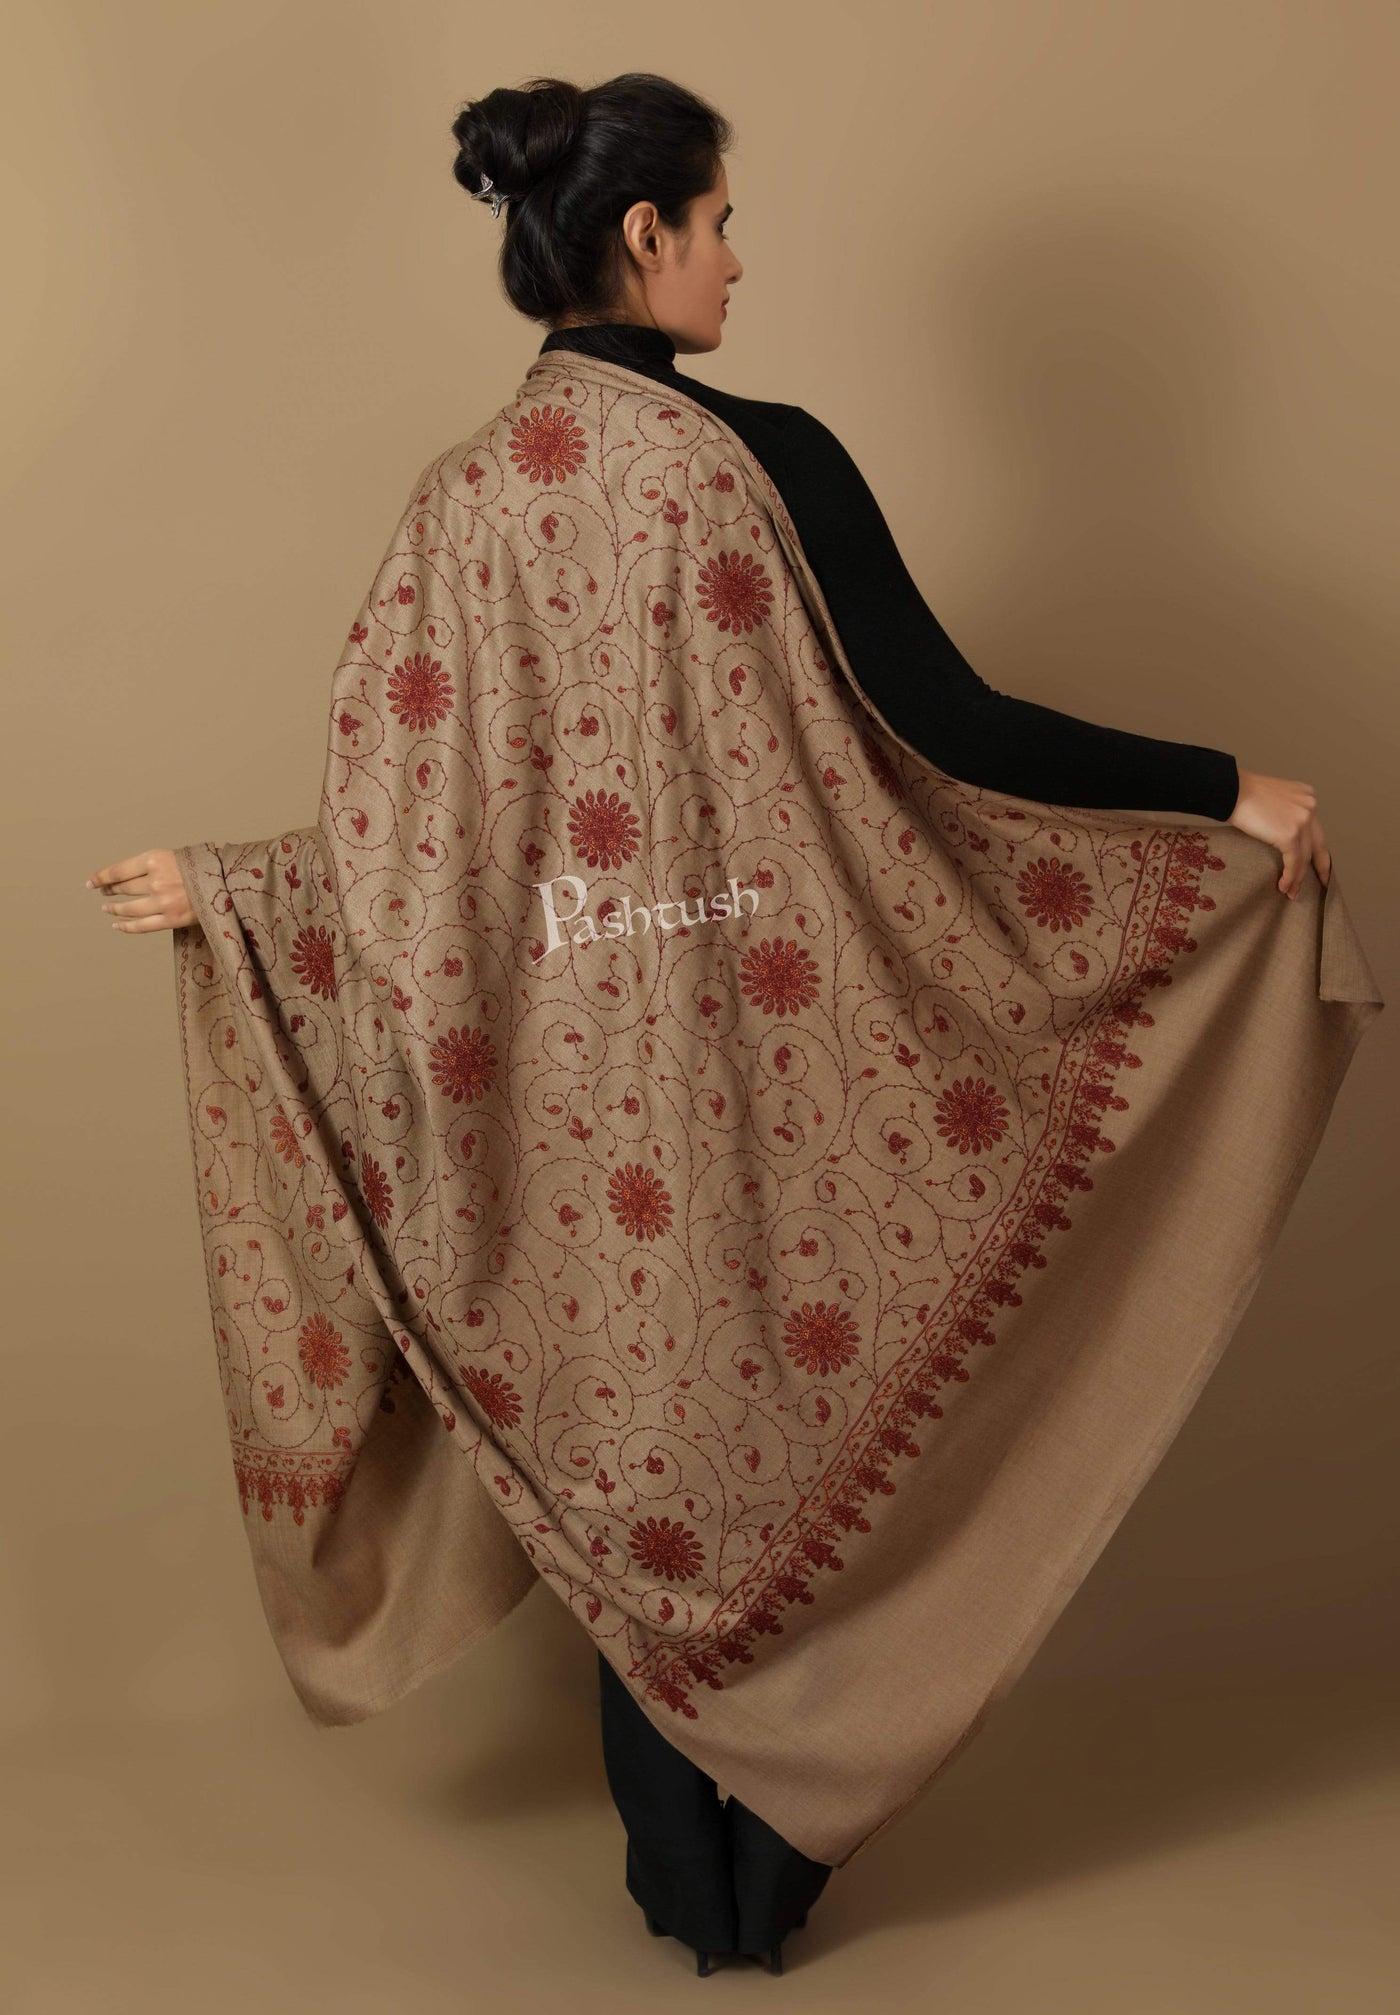 Pashtush India Shawl Pashtush Womens Kashmiri Embroidery Jaal, Fine Wool, Taupe